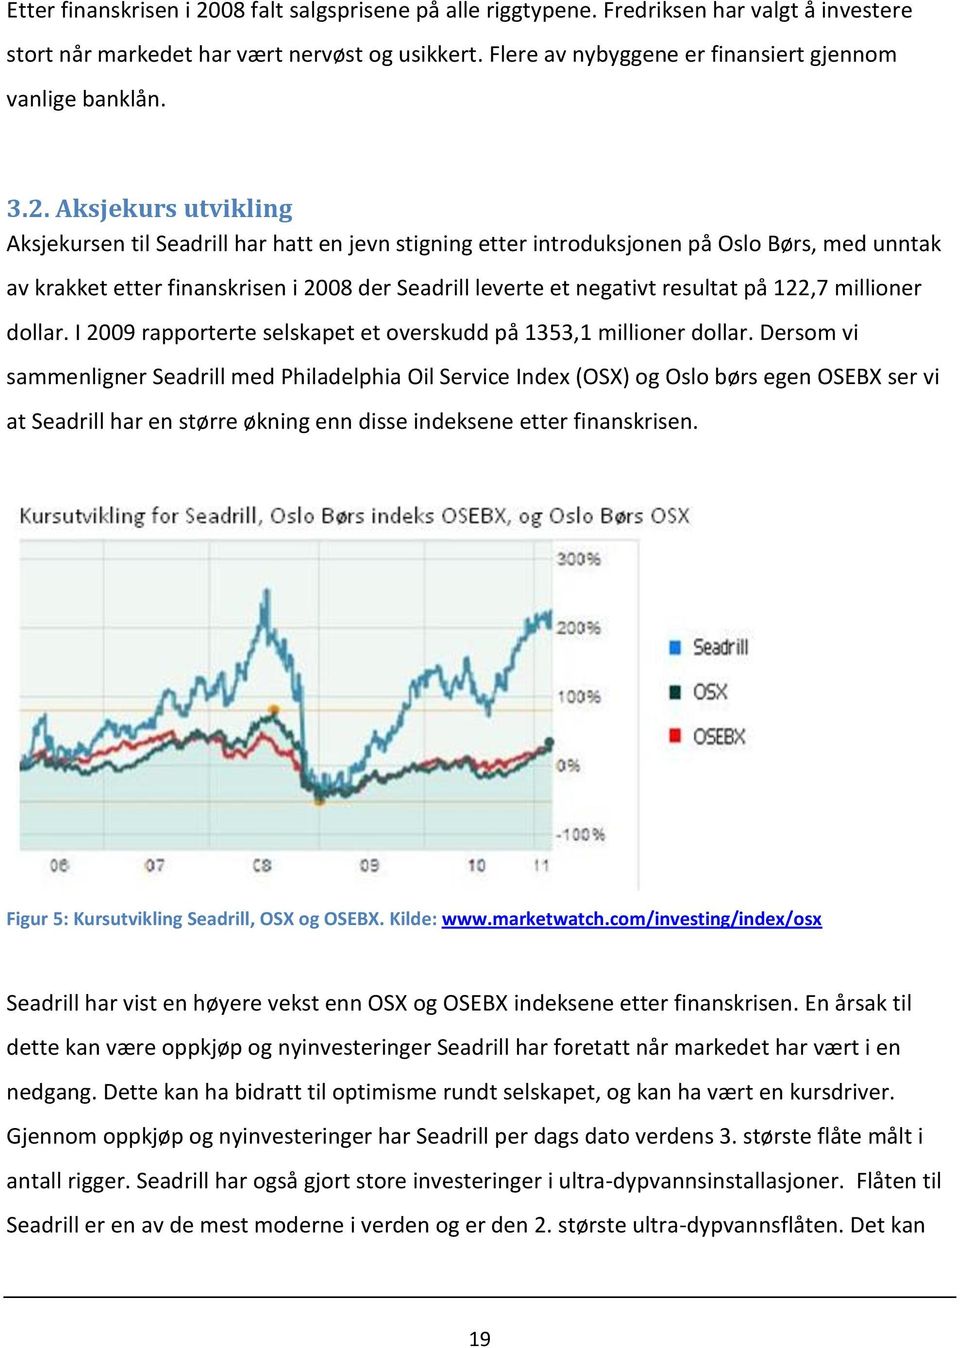 Aksjekurs utvikling Aksjekursen til Seadrill har hatt en jevn stigning etter introduksjonen på Oslo Børs, med unntak av krakket etter finanskrisen i 2008 der Seadrill leverte et negativt resultat på